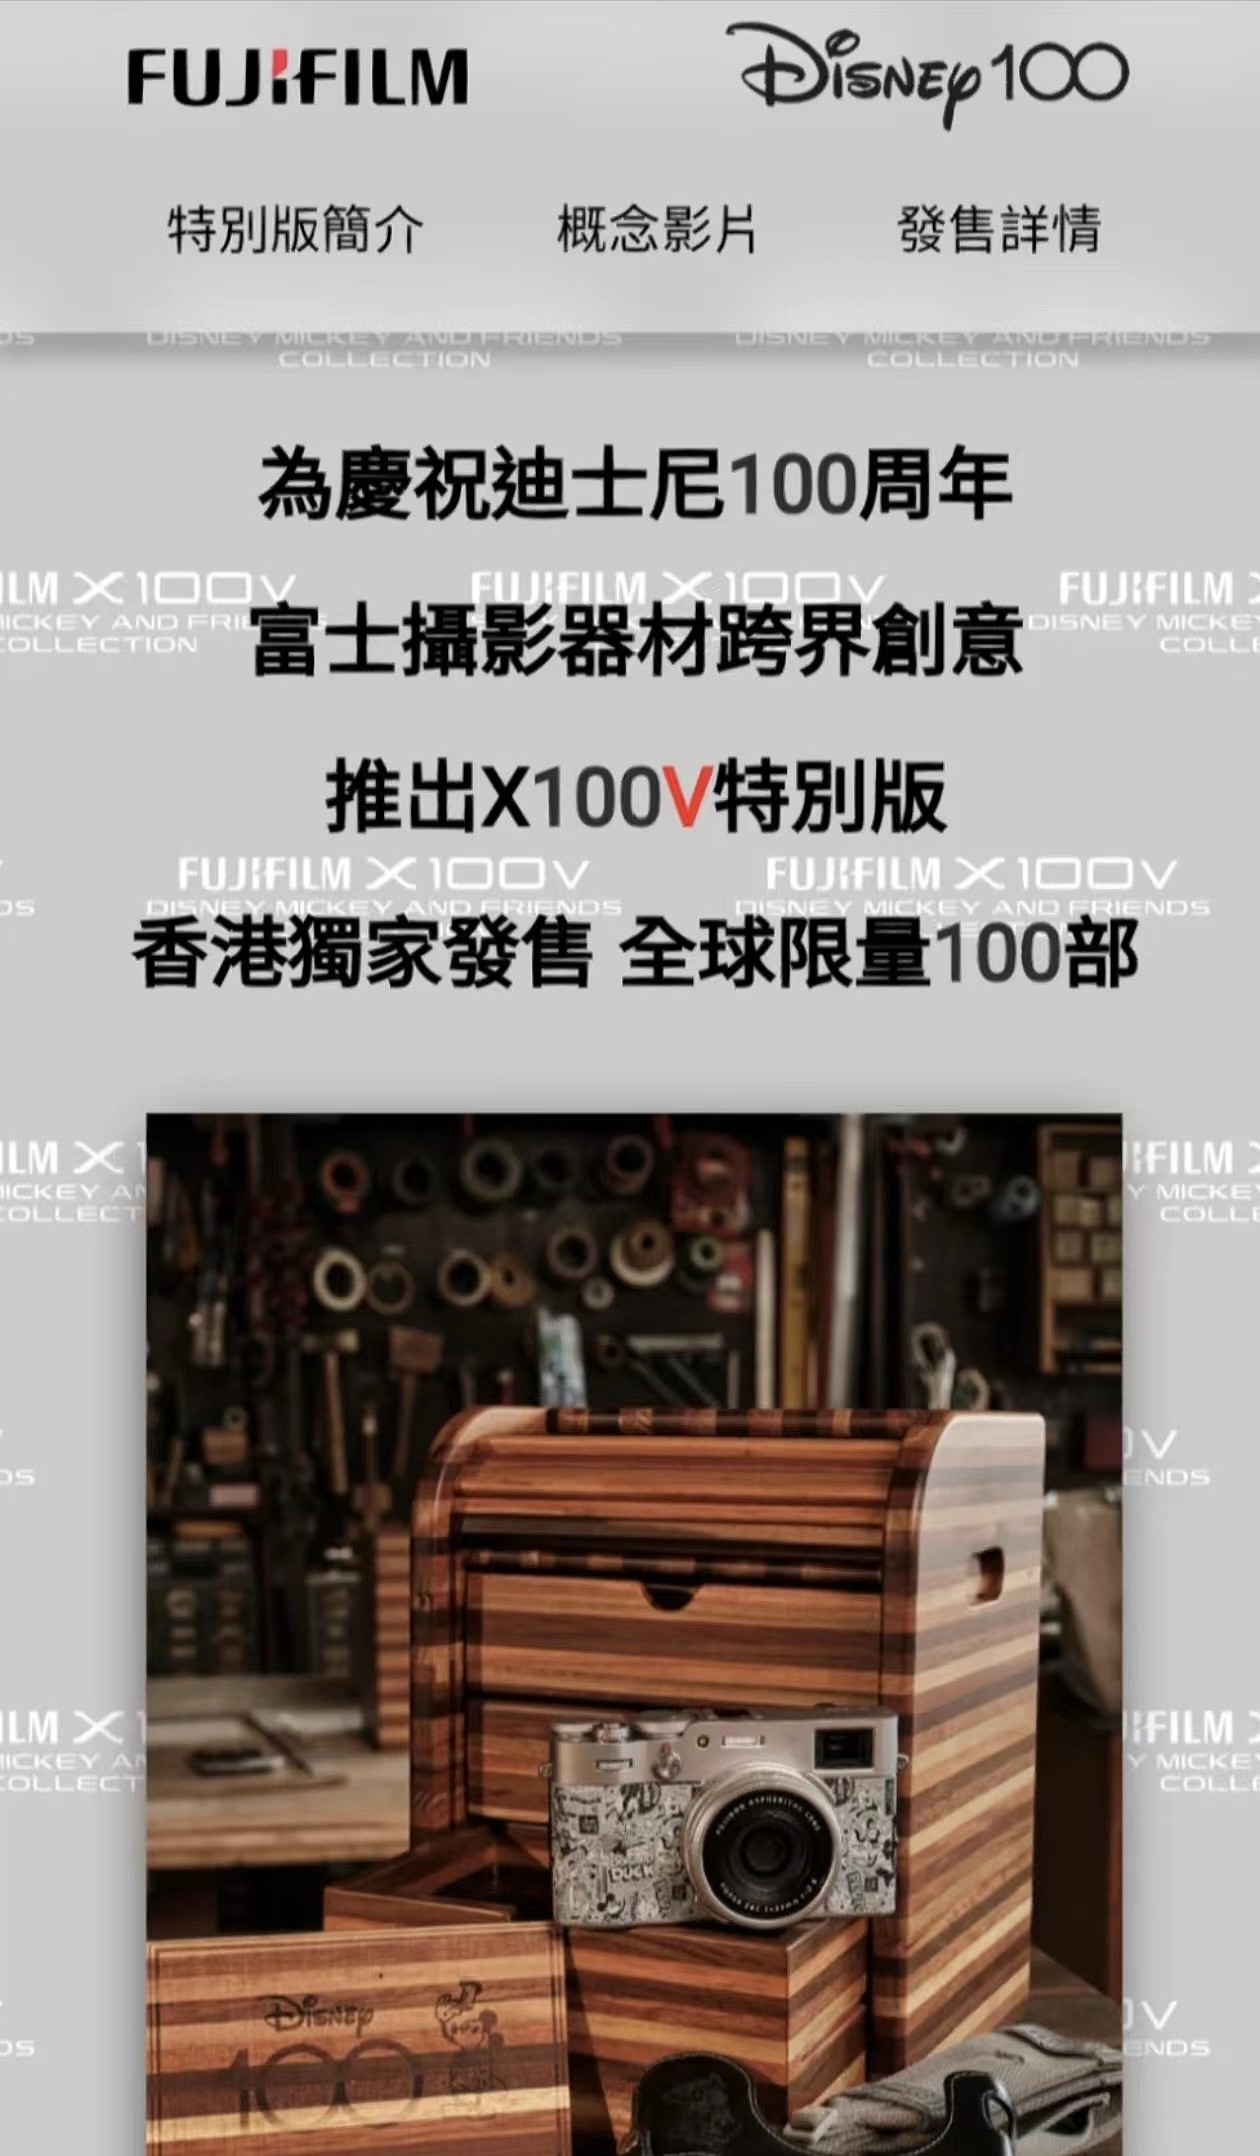 富士X100V推出Disney100周年纪念版 于香港限量发行一百台 - 1